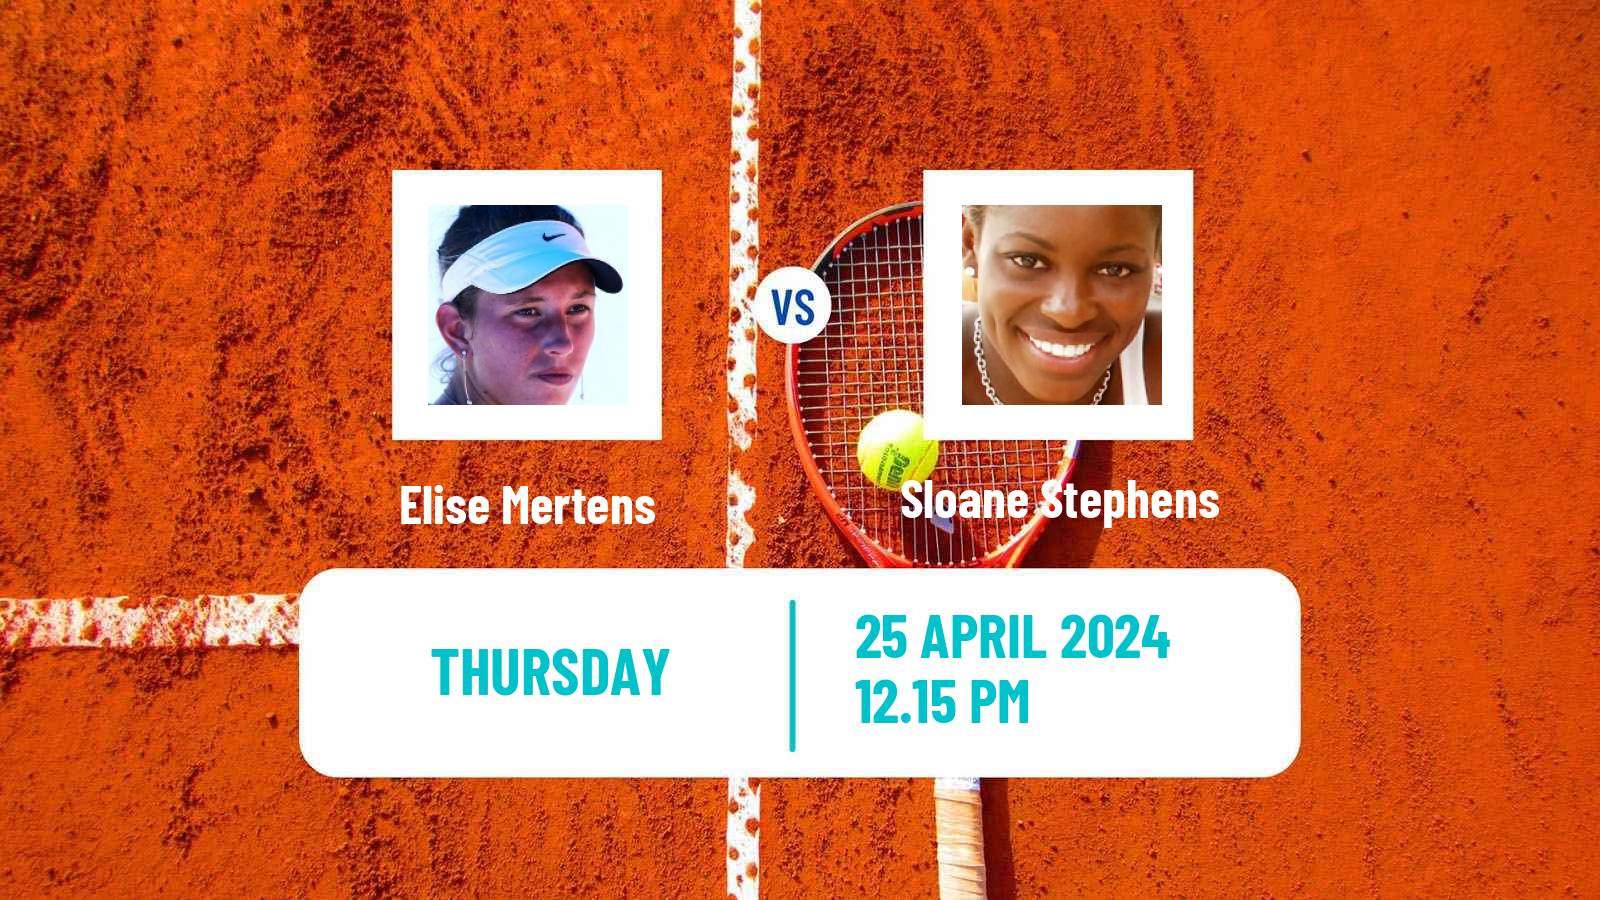 Tennis WTA Madrid Elise Mertens - Sloane Stephens